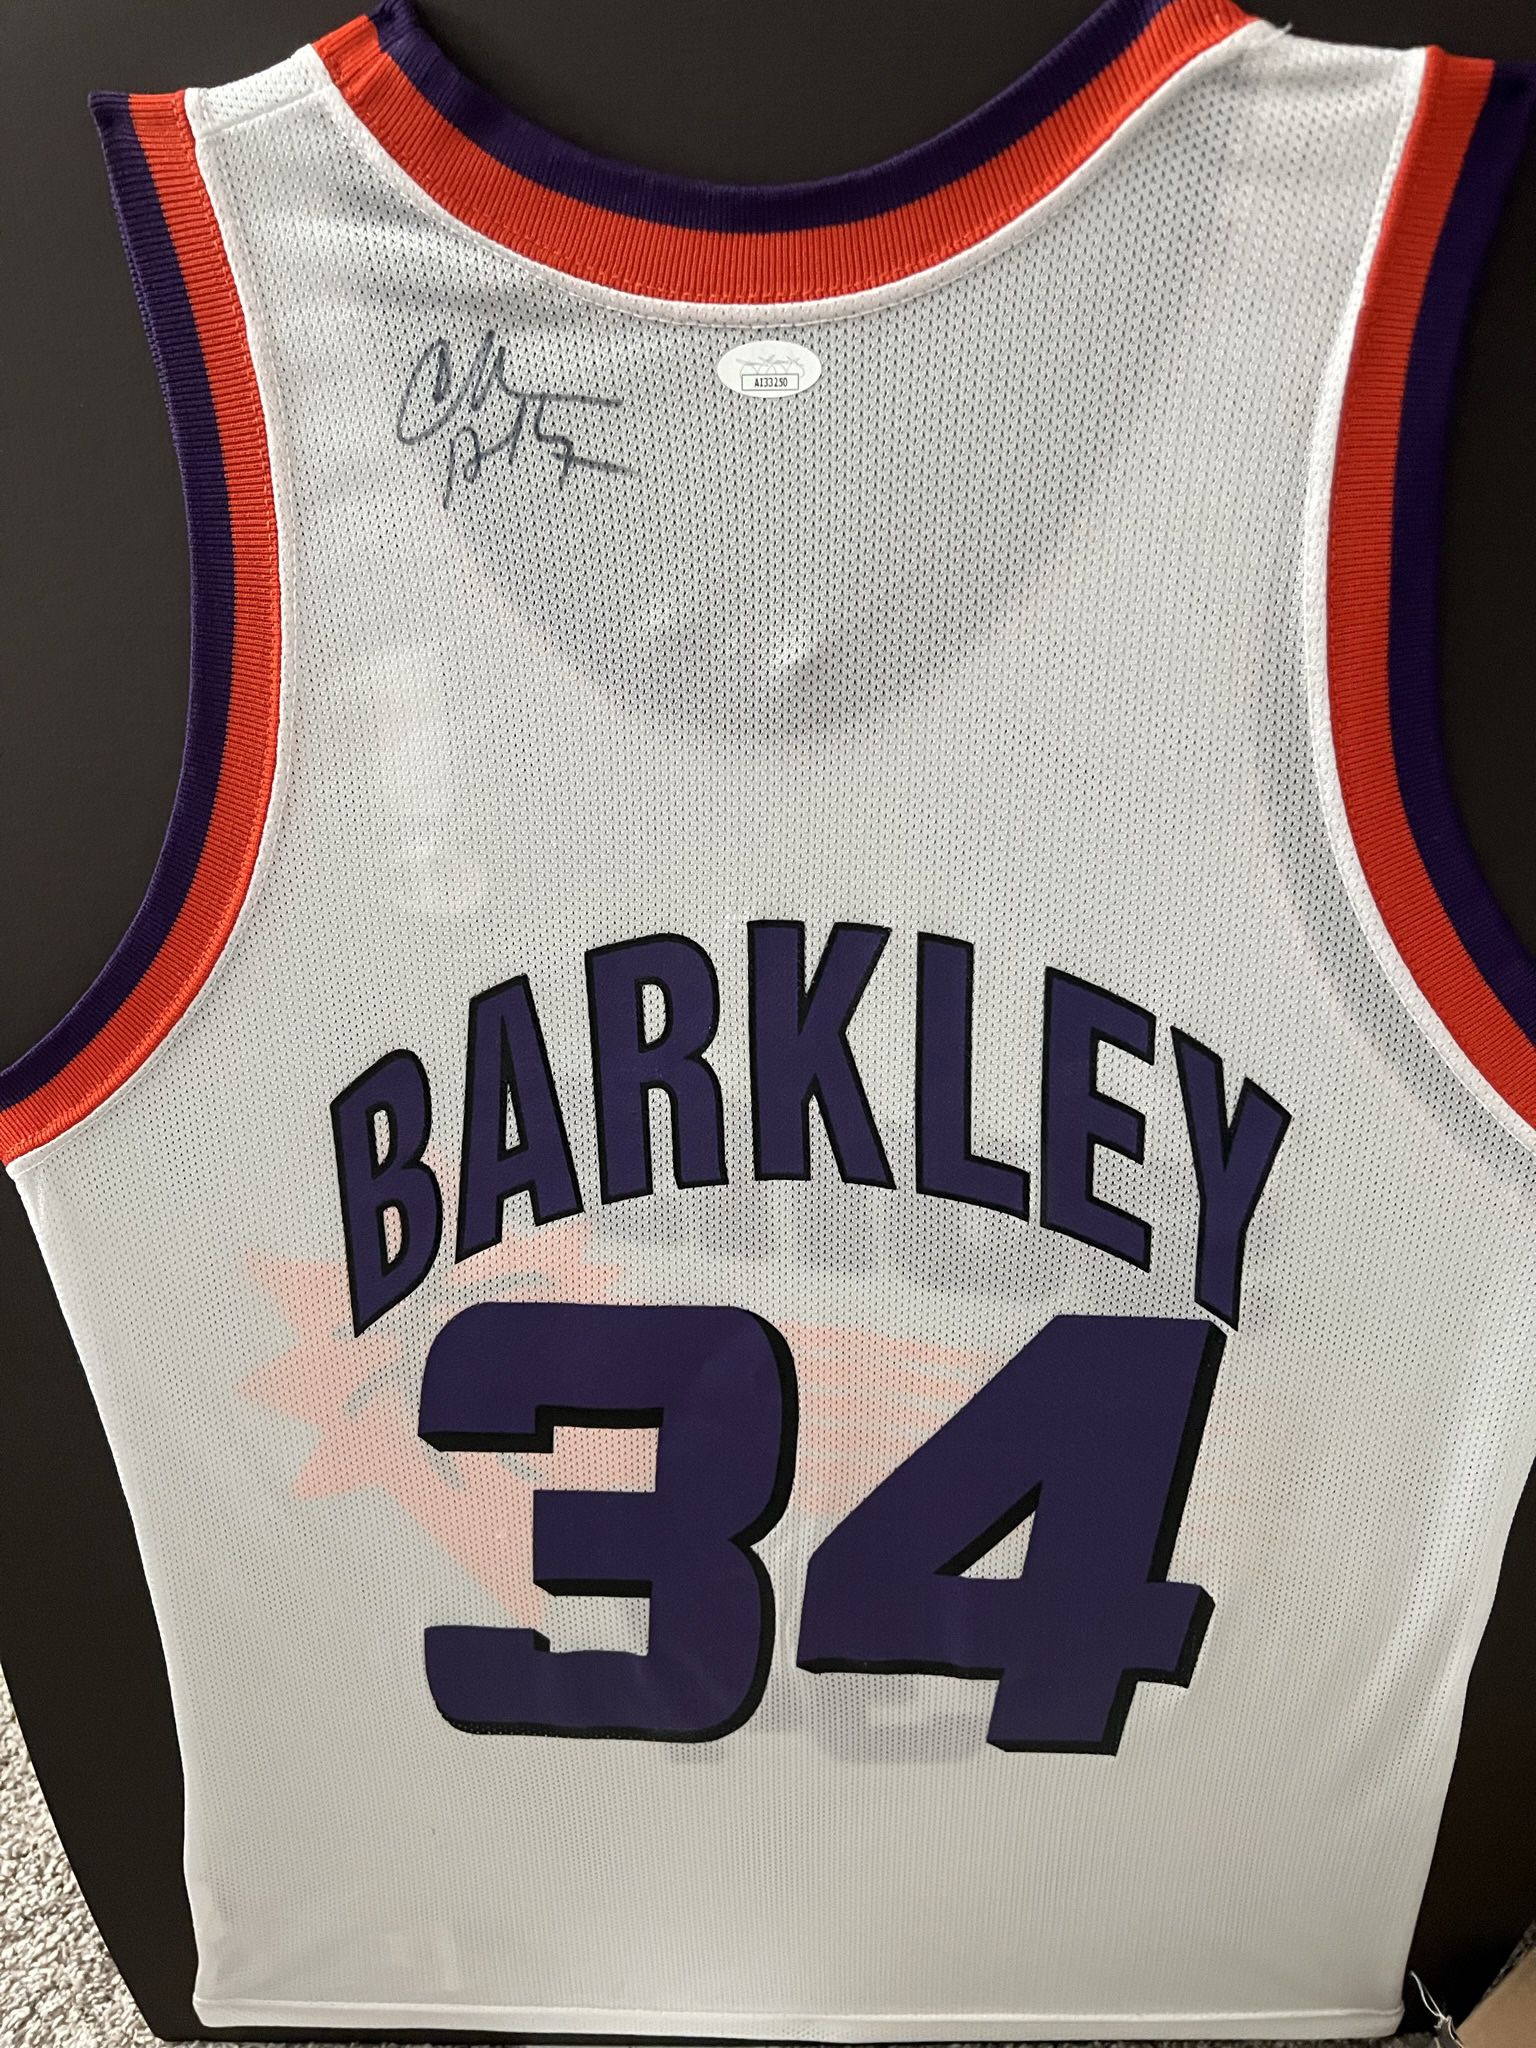 Charles Barkley Signed Suns Jersey (JSA)